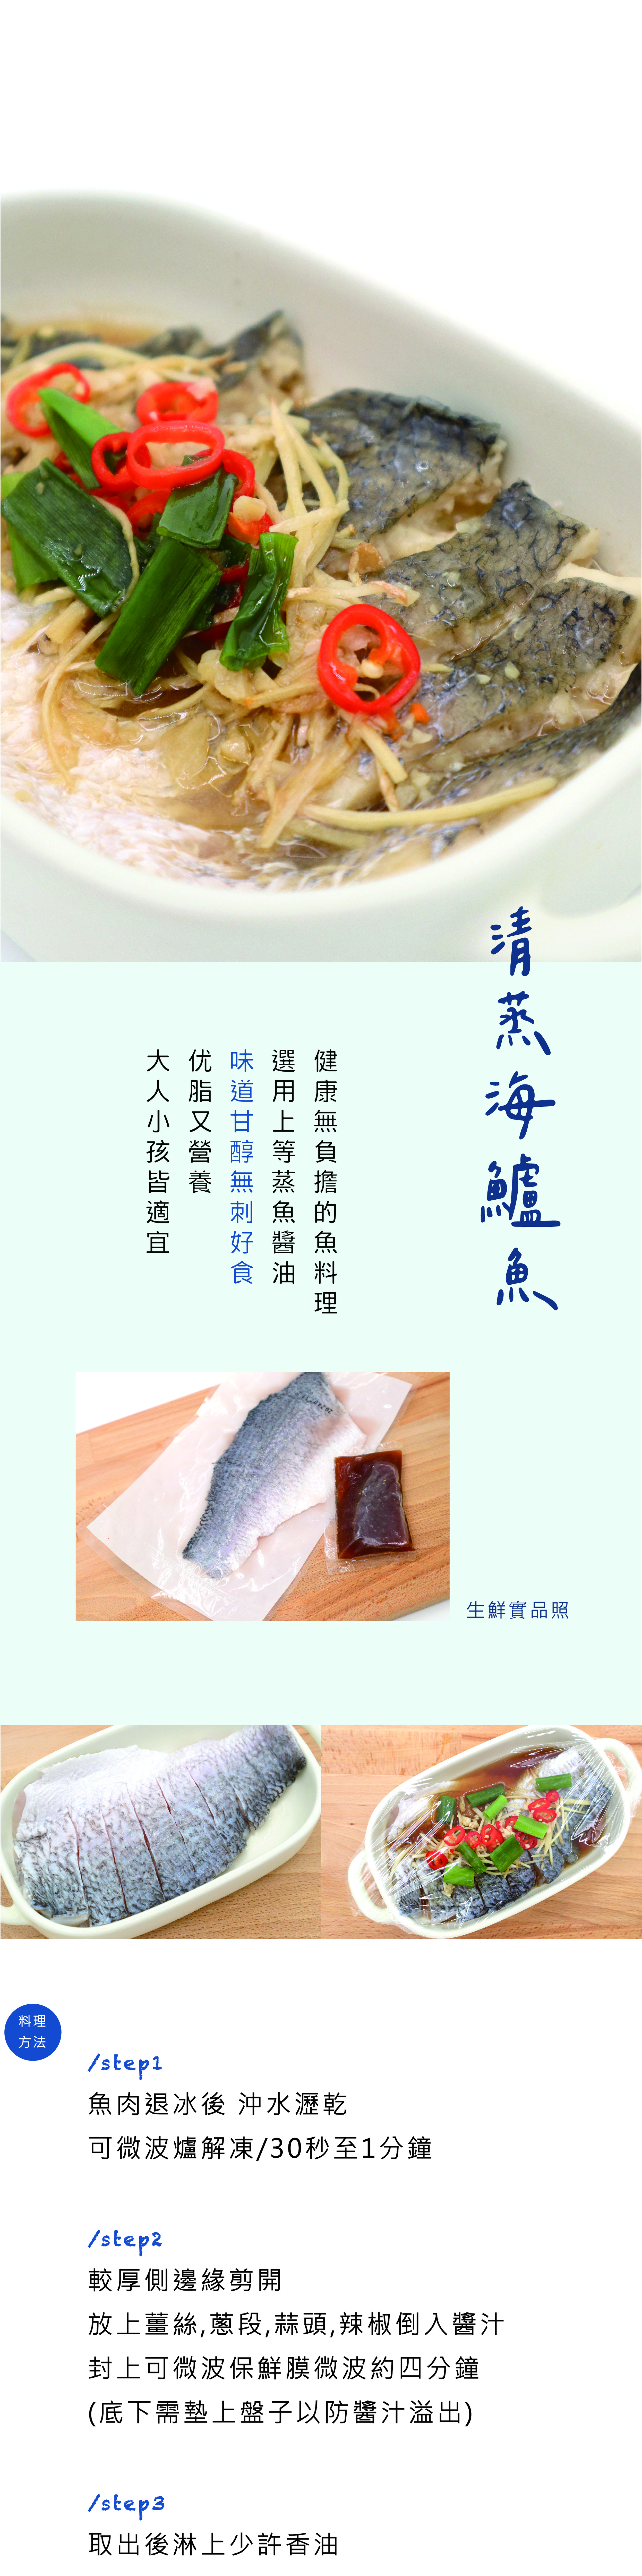 清蒸鱸魚edm-02